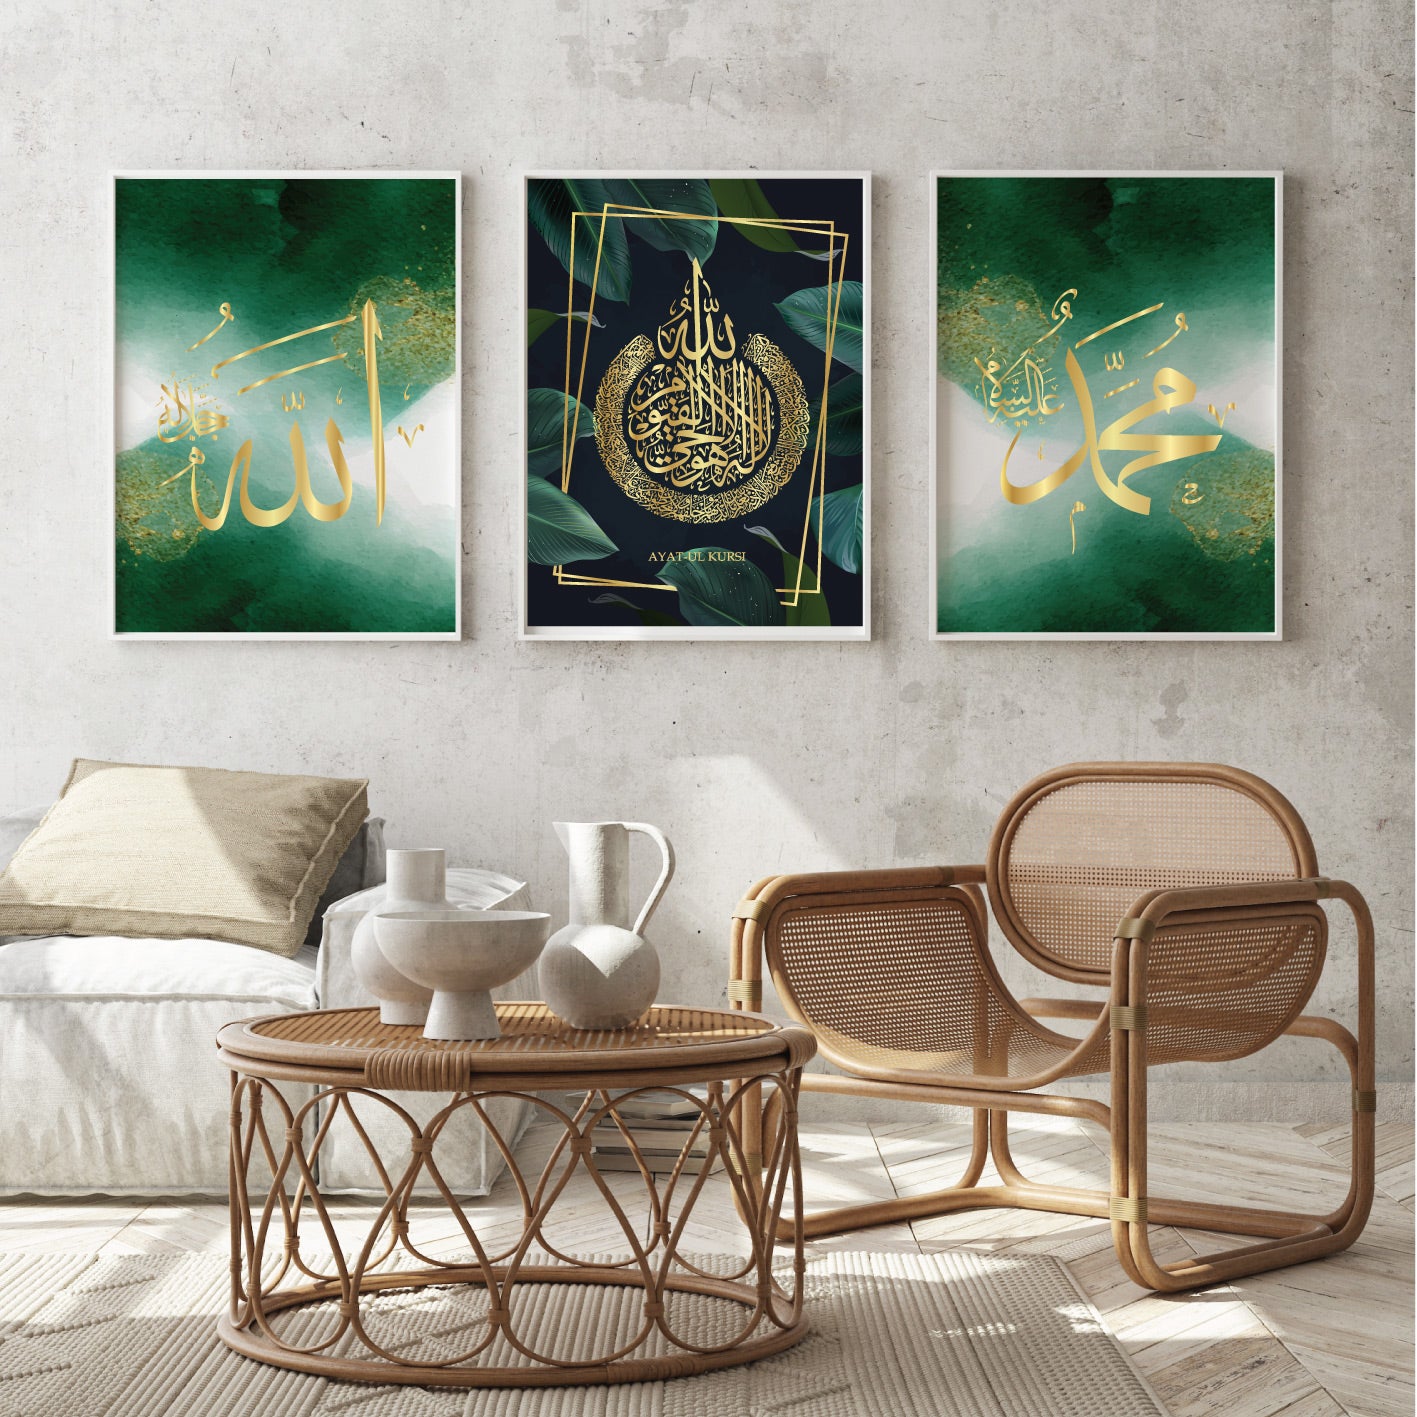 islamitische posters set van 3 - allah - muhammed -ayat el kursu - woondecoratie - islam wall art - islamic art - islamitische kunst - duvar poster - muslim art